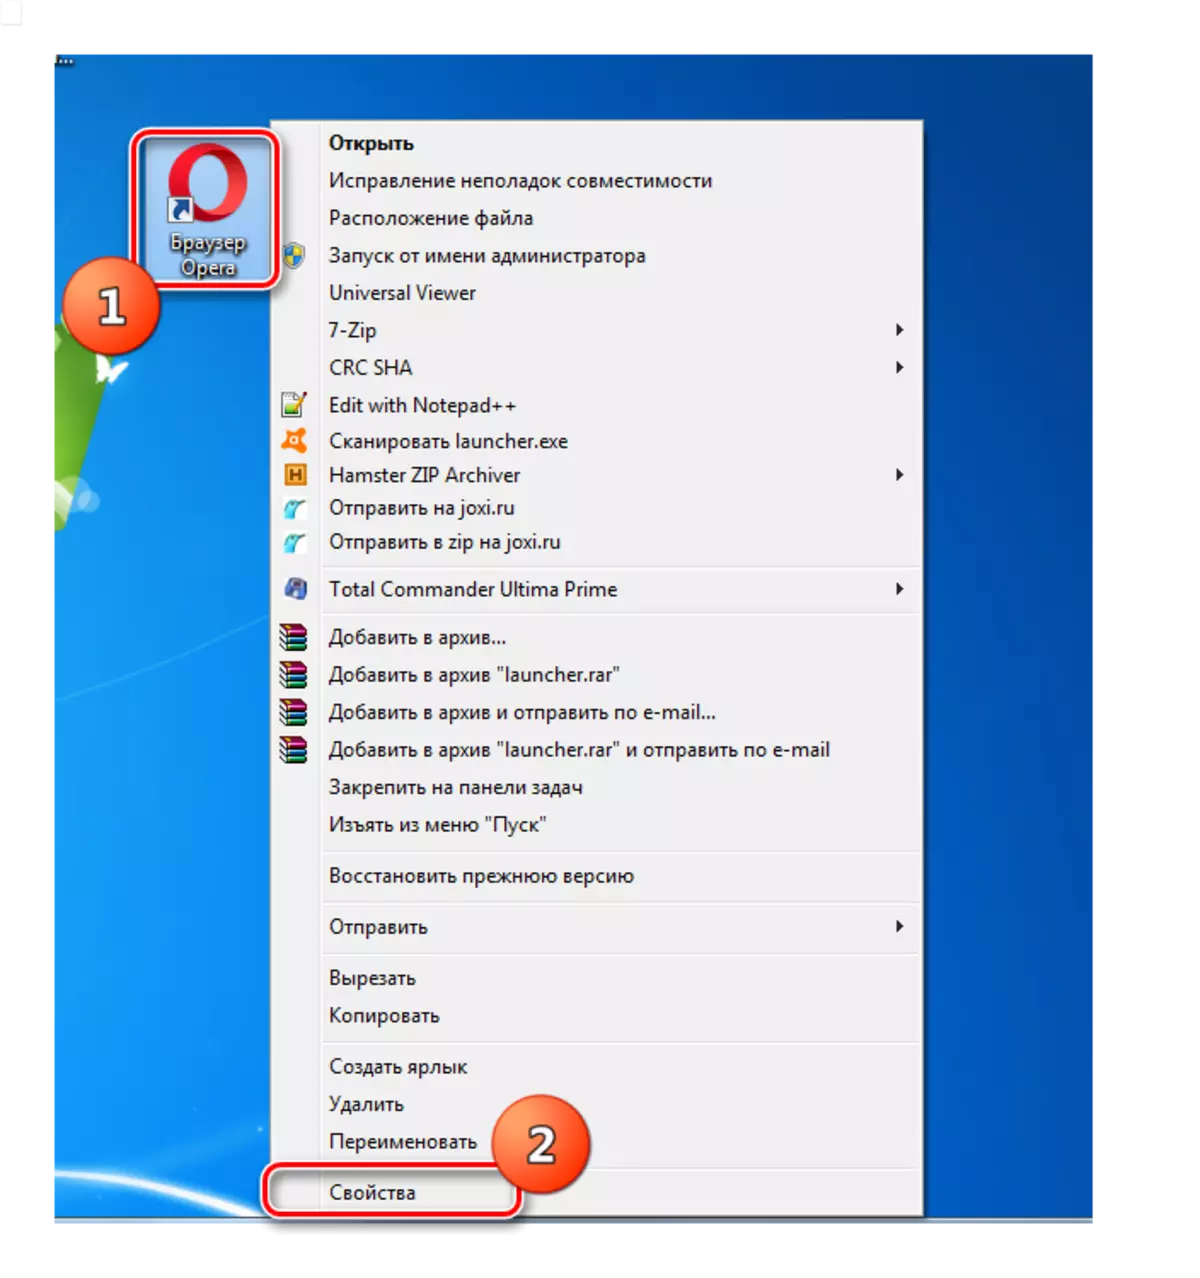 Windows 7деги контекс менюсу аркылуу операнын браузеринин энбелги касиеттери